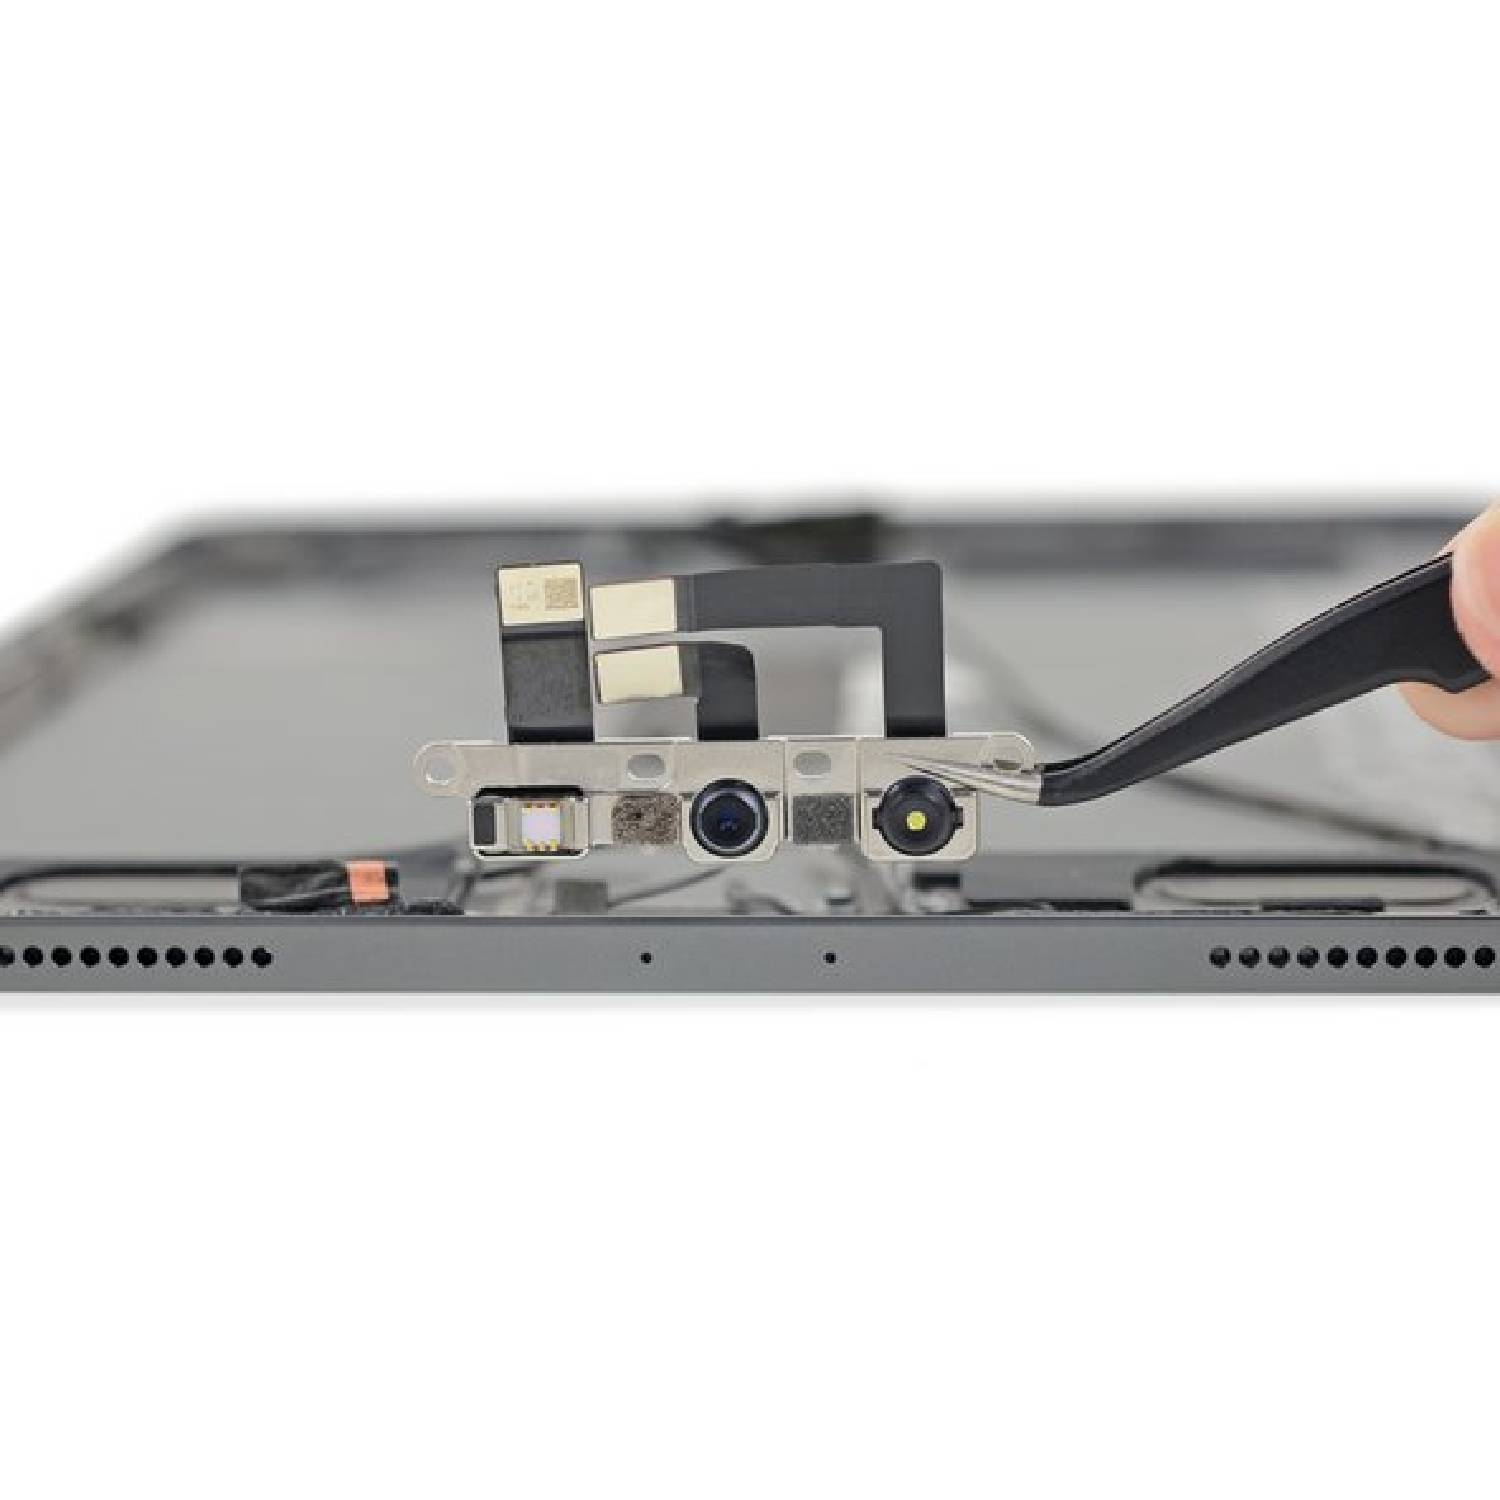 iPad Pro 10.5 repair